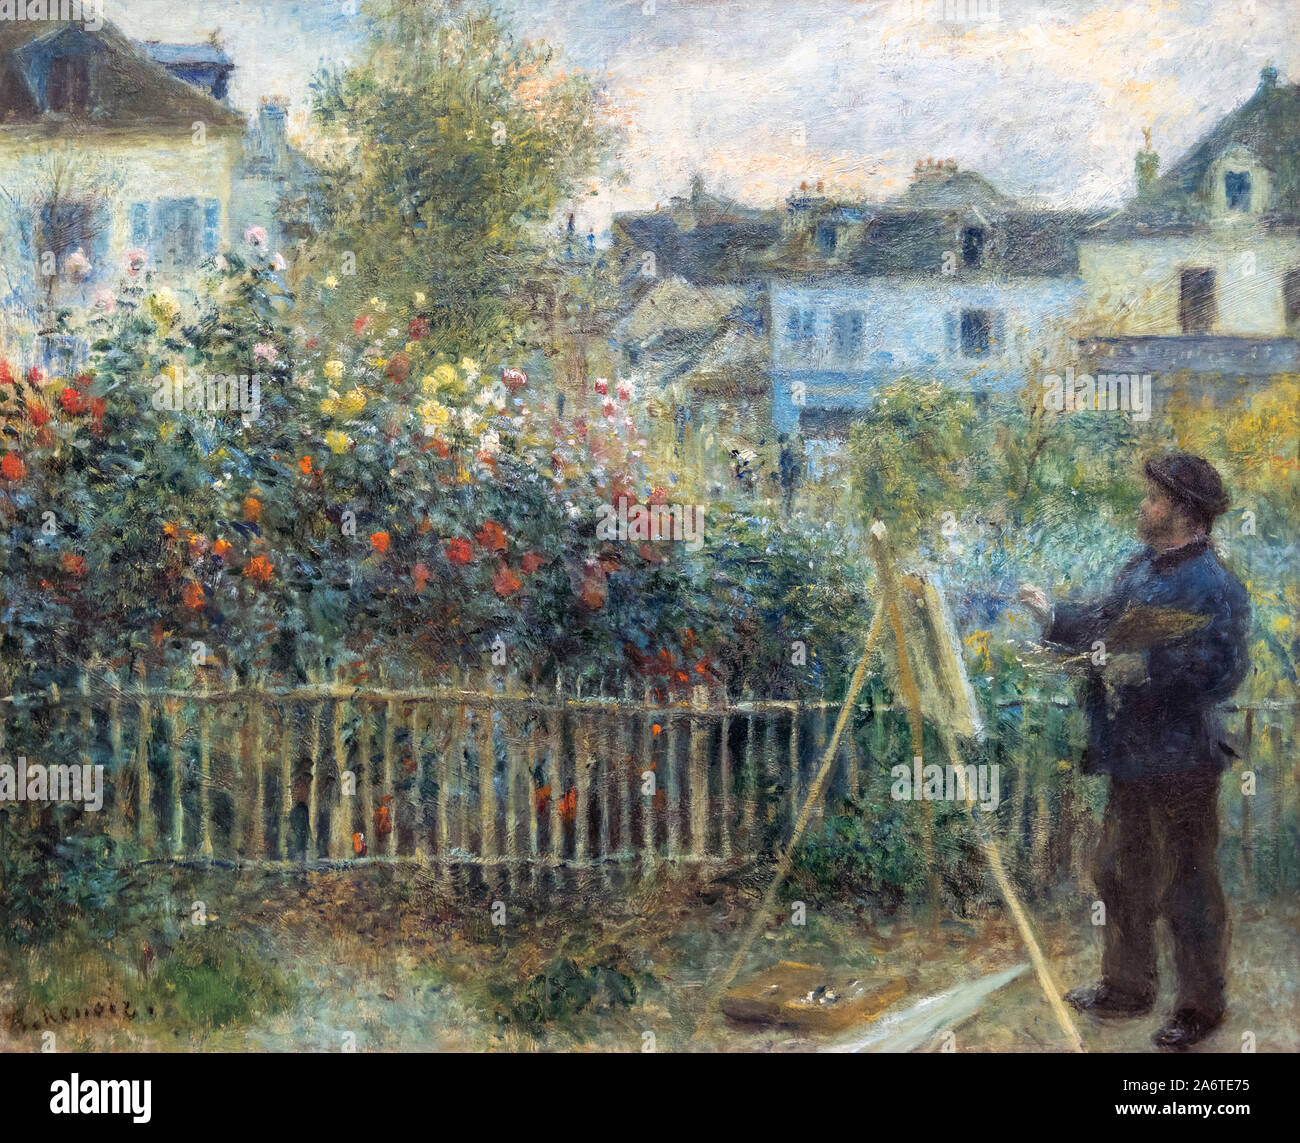 La peinture de Claude Monet dans son jardin à Argenteuil par Auguste Renoir (1841-1919). Portrait de l'impressionniste français Claude Monet par Auguste Renoir, 1873 Banque D'Images